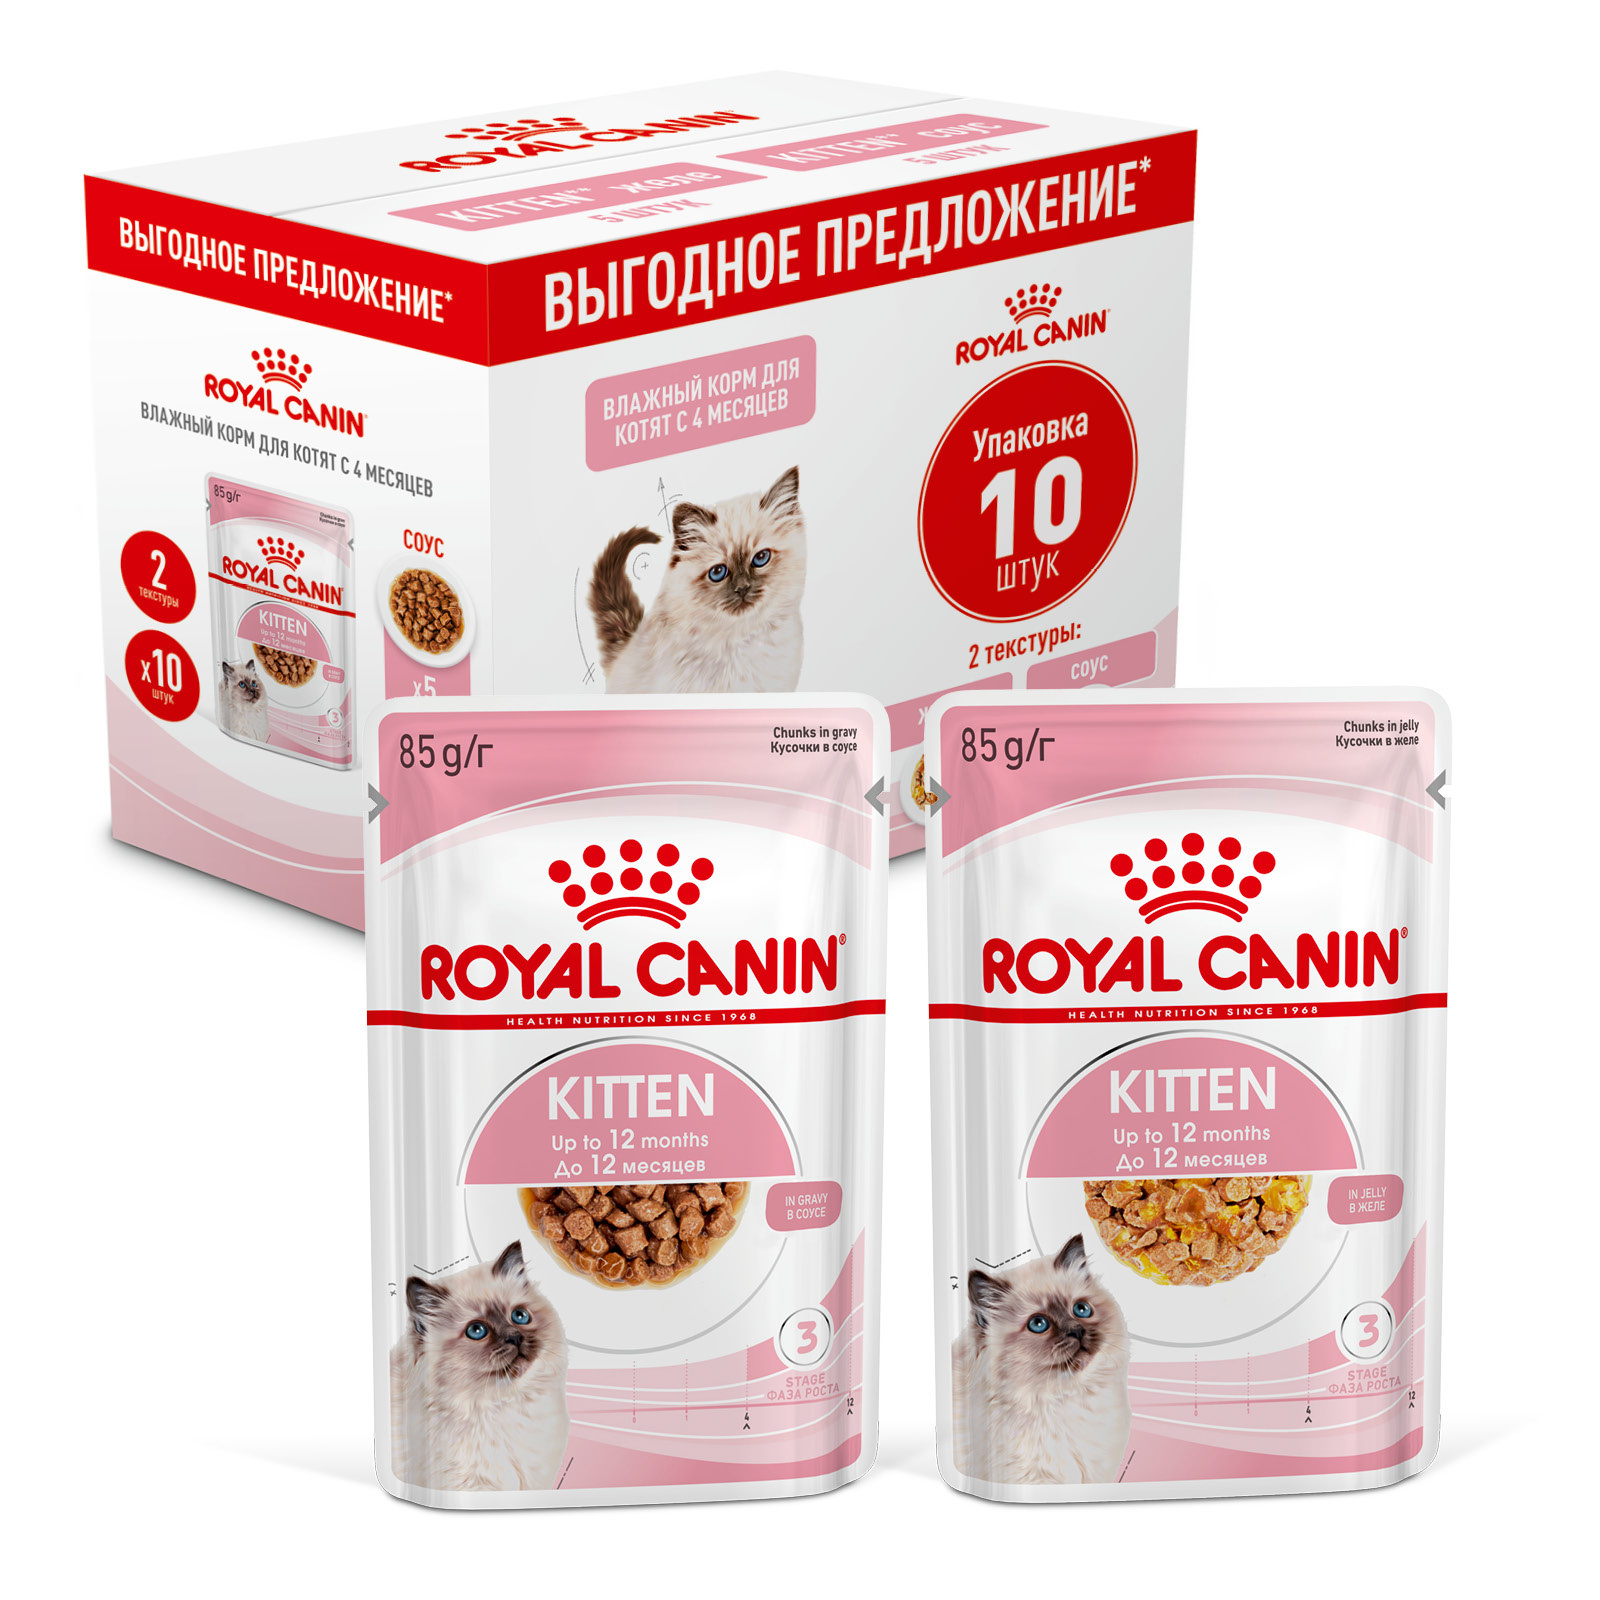 Royal Canin паучи мультипак Паучи кусочки в соусе 5 шт + Паучи кусочки в желе 5 шт для котят 4-12 мес. (850 г)